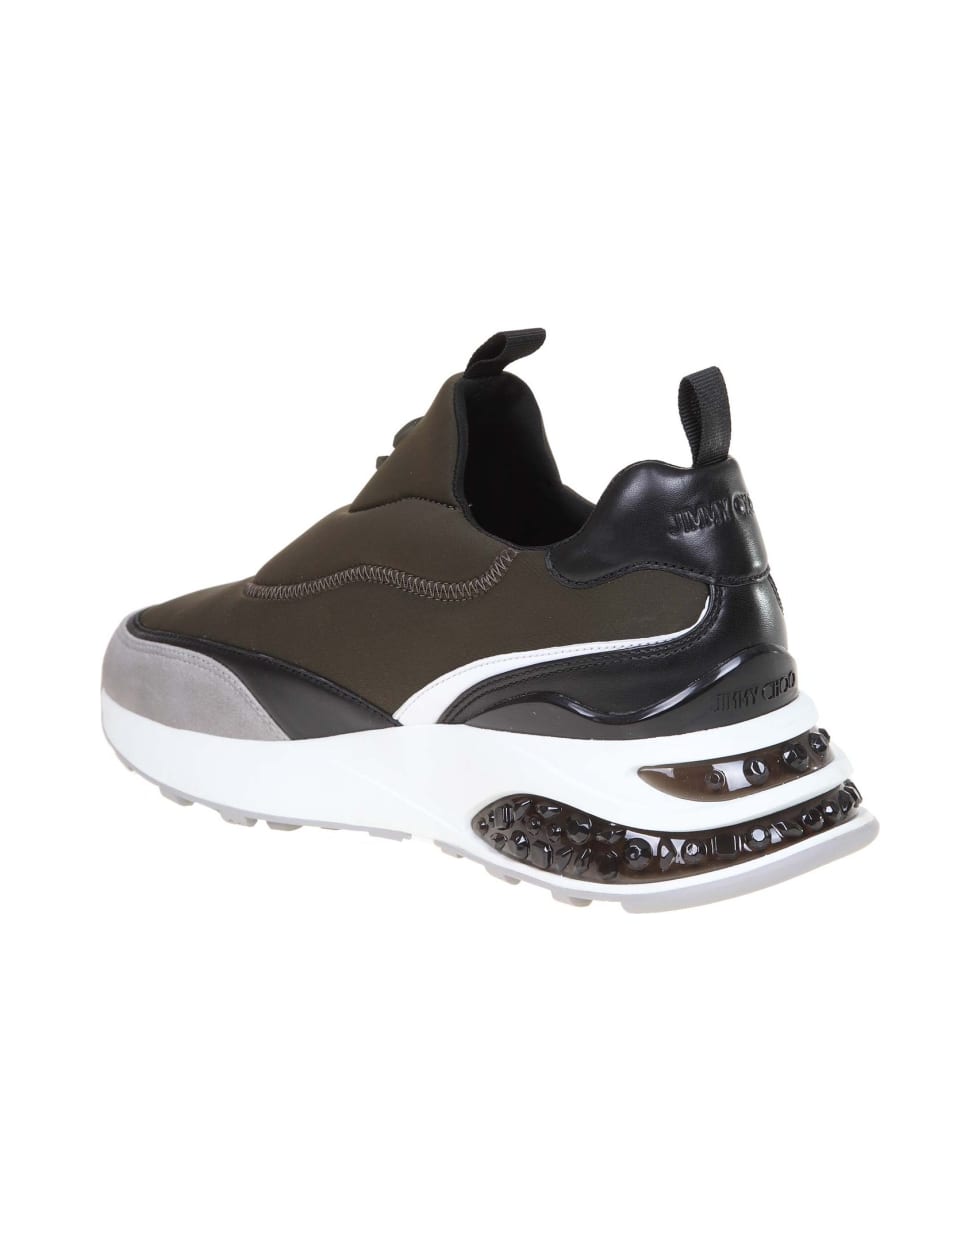 Jimmy Choo Manphis Sneakers In Neoprene And Leather - Seaweed